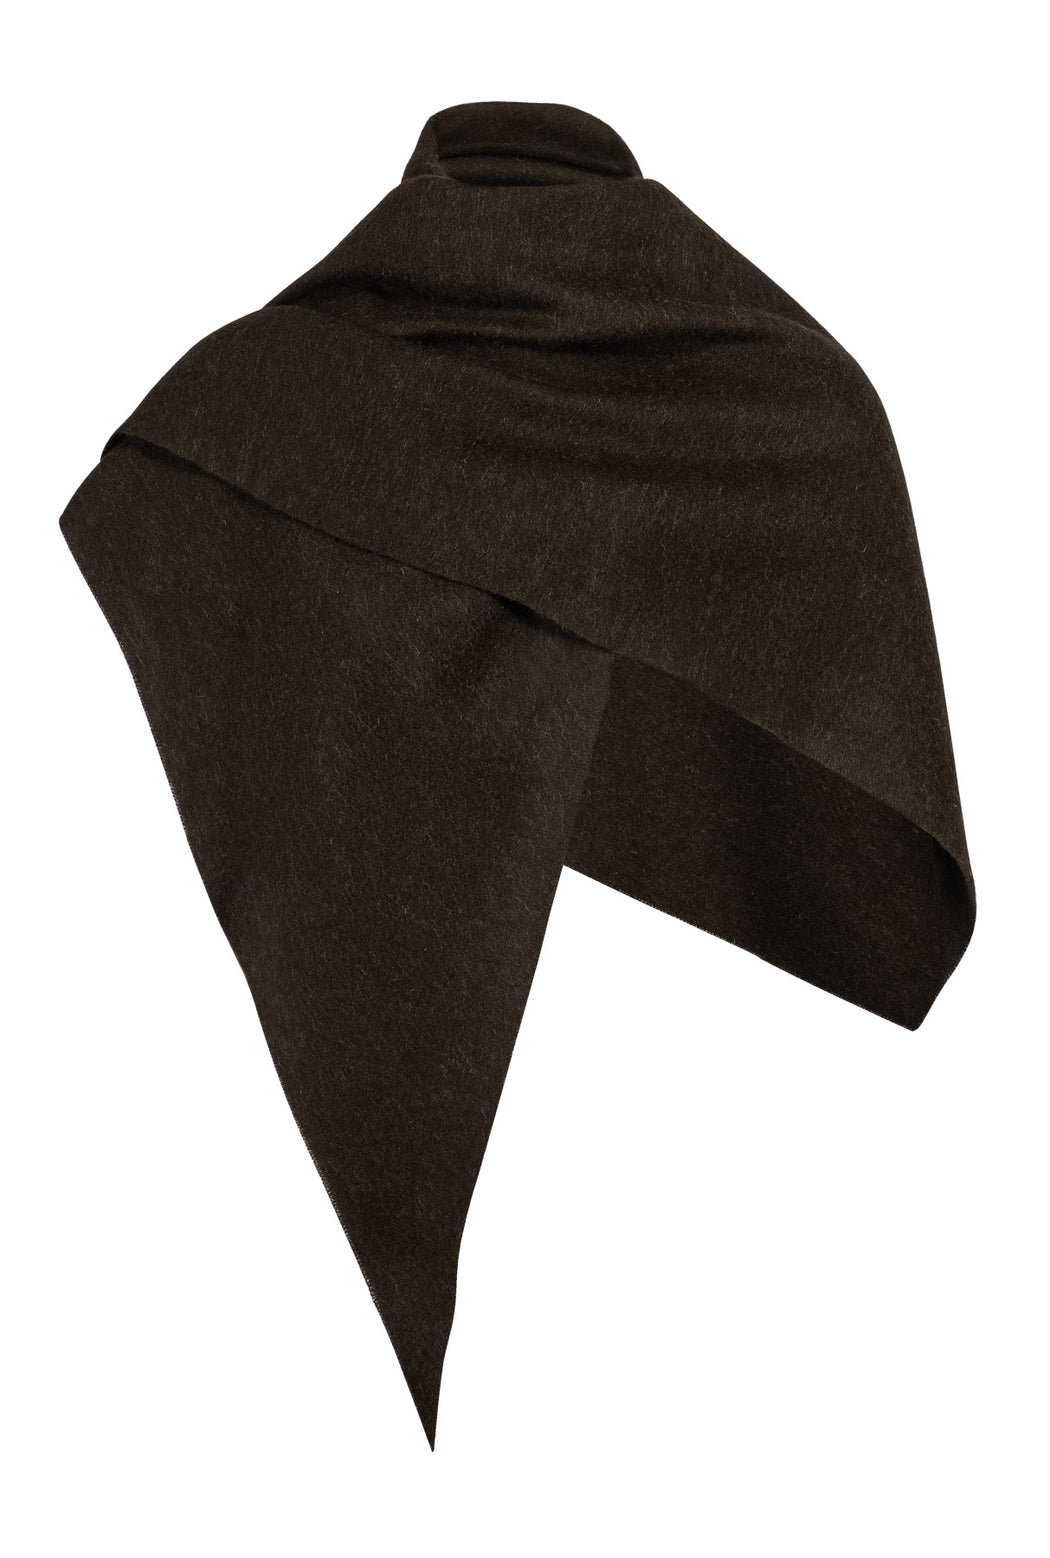 Envelope1976 Triangle scarf - Llama Scarf Dark coffee solid